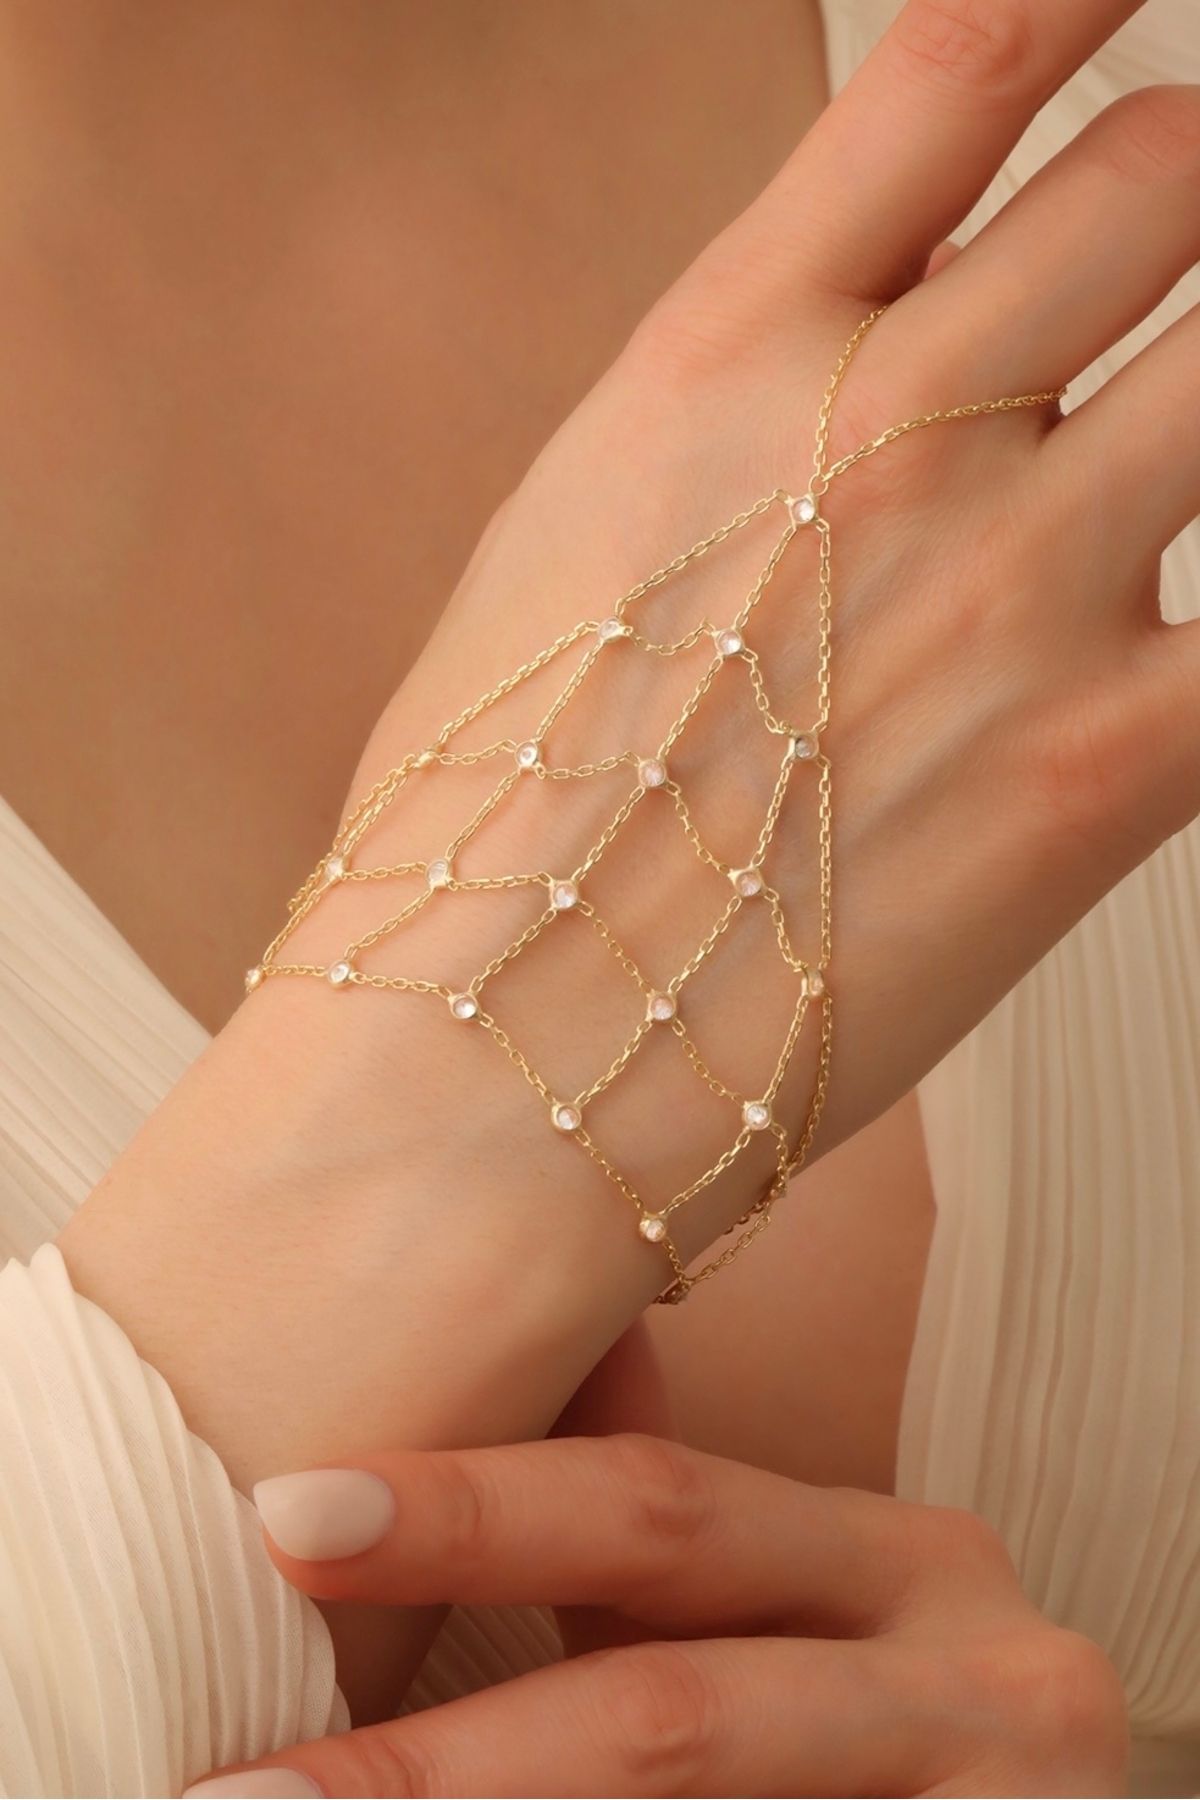 emy by emel luxury silver jewelry Altın Kaplama Taşlı Dantel Şahmeran 925 Ayar Gümüş